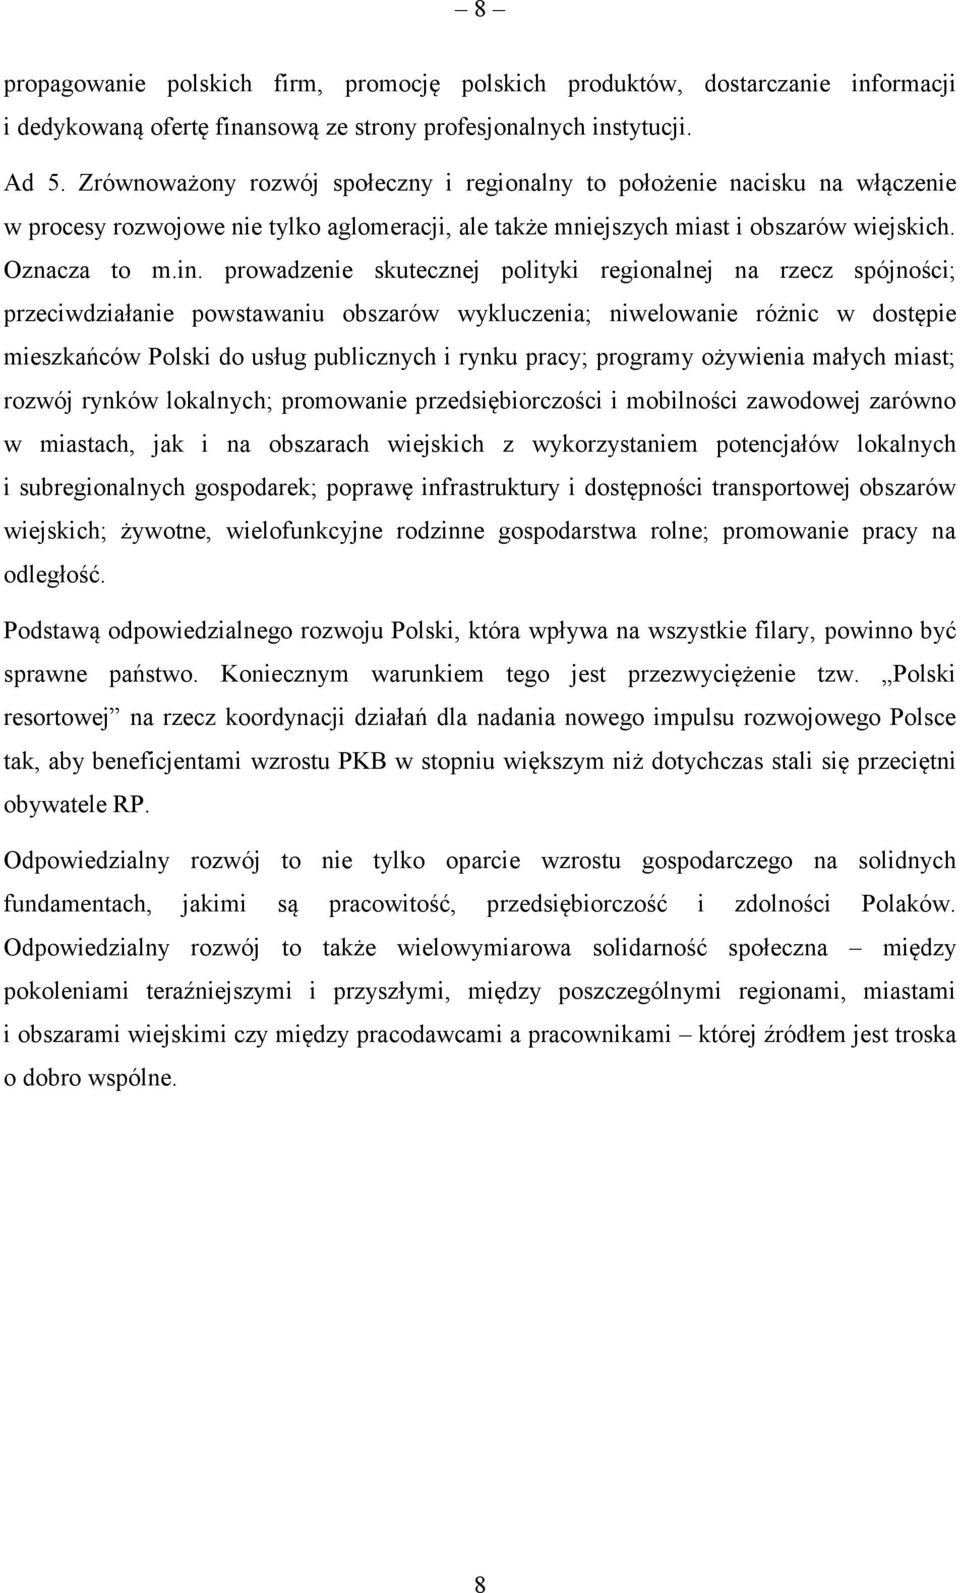 prowadzenie skutecznej polityki regionalnej na rzecz spójności; przeciwdziałanie powstawaniu obszarów wykluczenia; niwelowanie różnic w dostępie mieszkańców Polski do usług publicznych i rynku pracy;